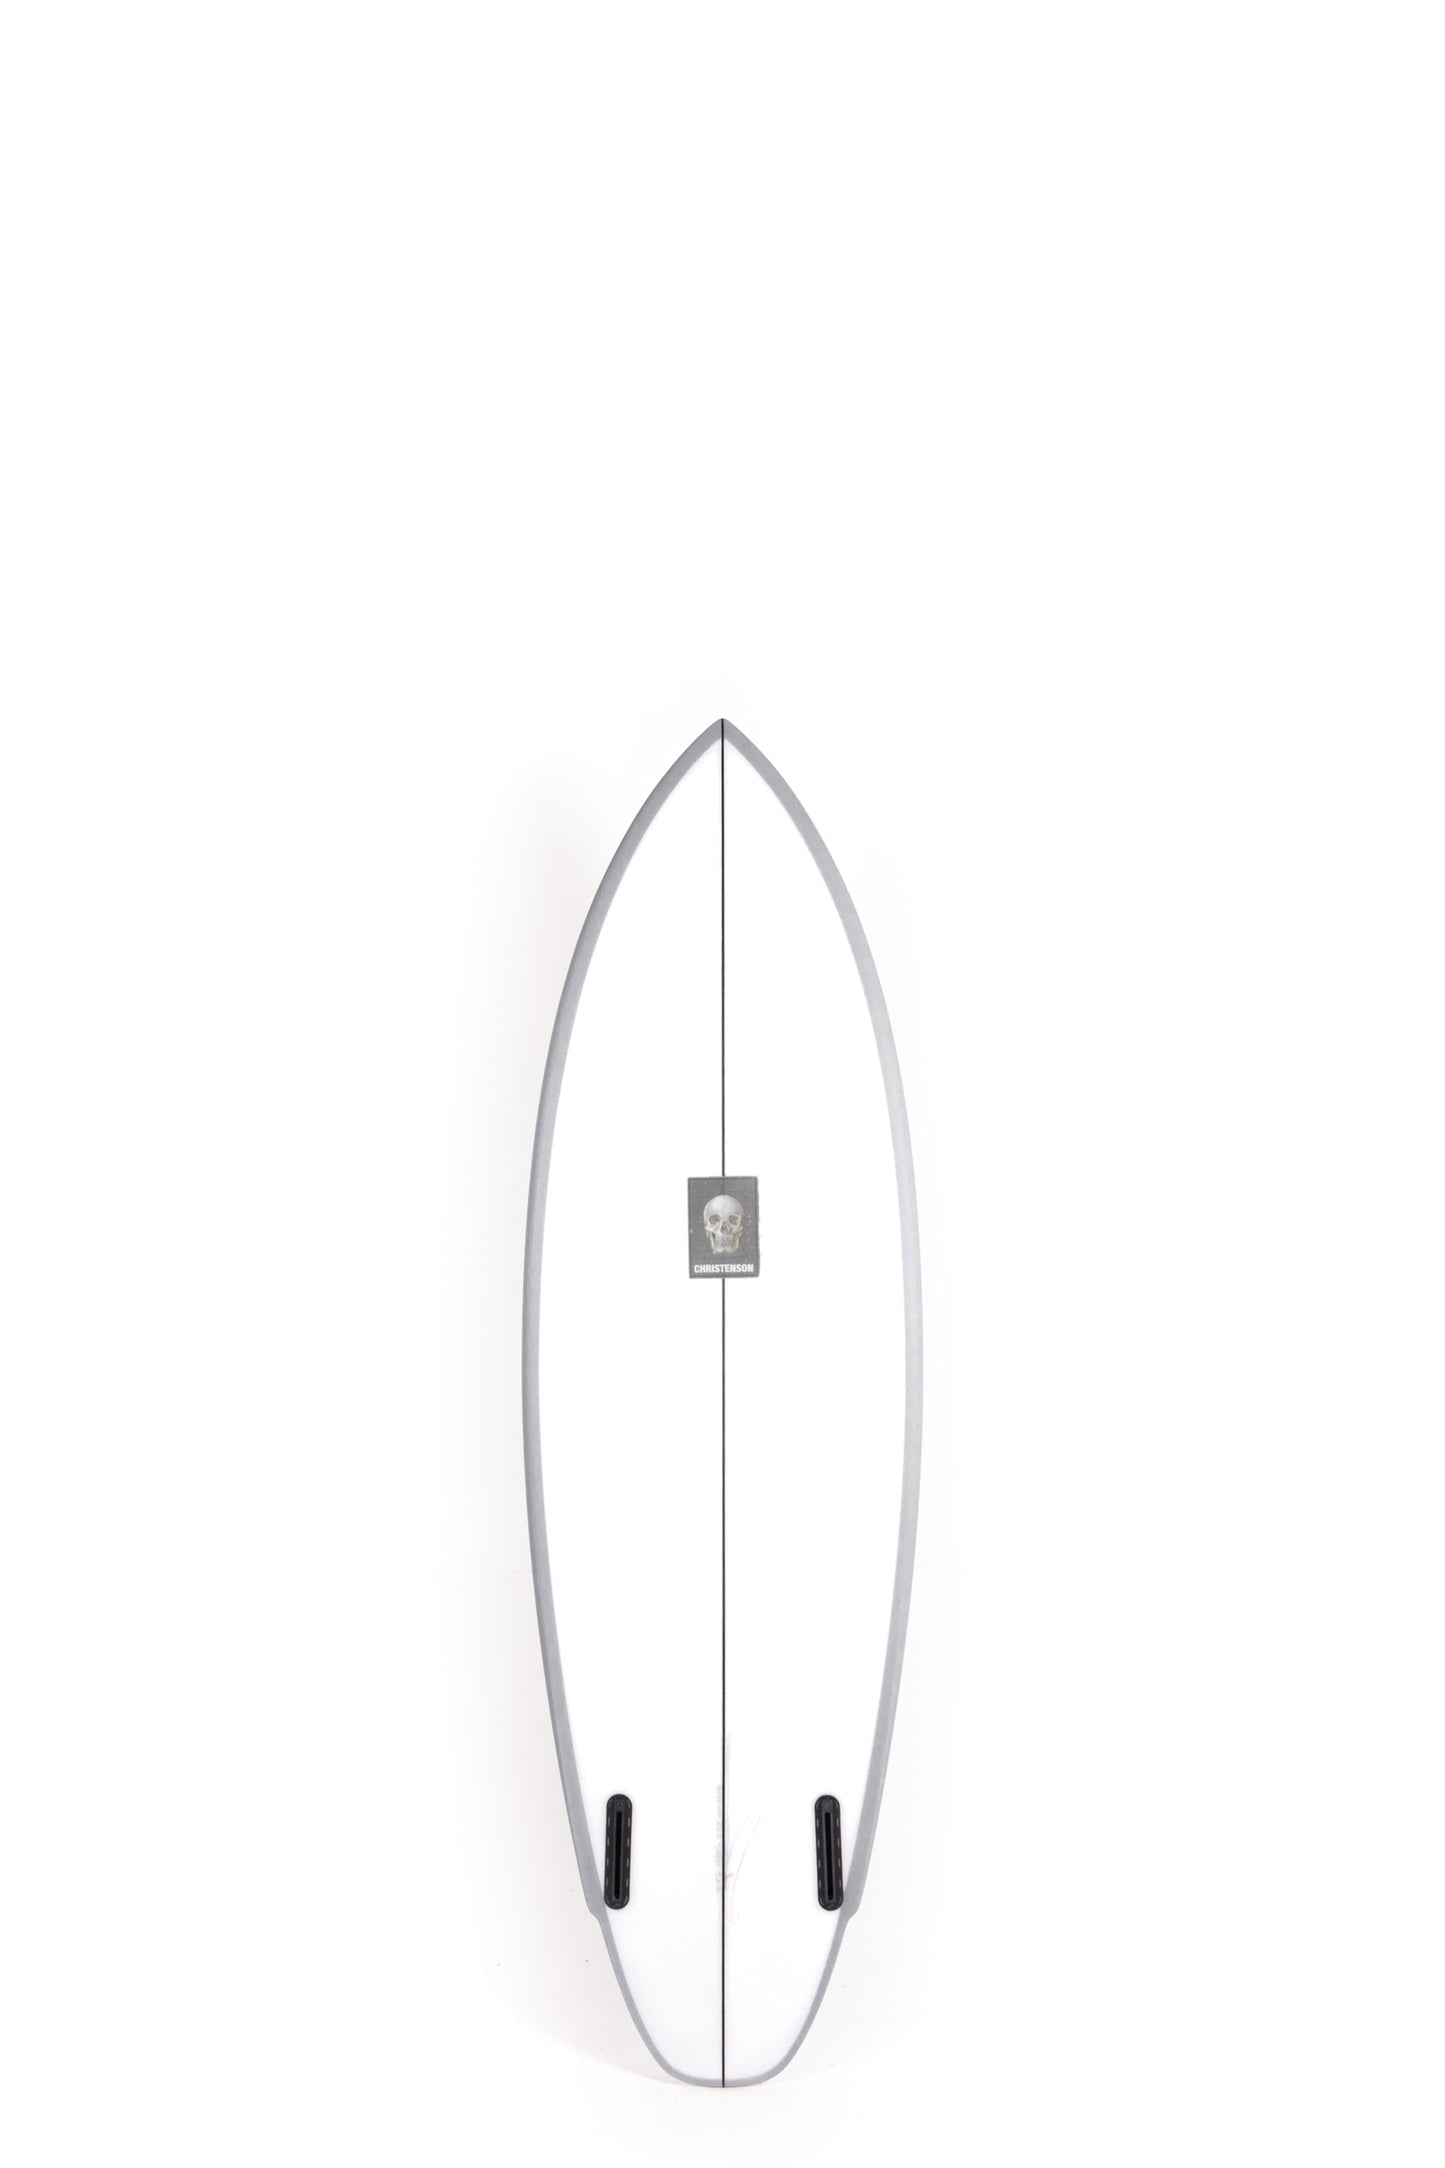 
                  
                    Christenson Surfboards - LANE SPLITTER - 5'9" x 19 7/8 x 2 5/8 - CX05823
                  
                